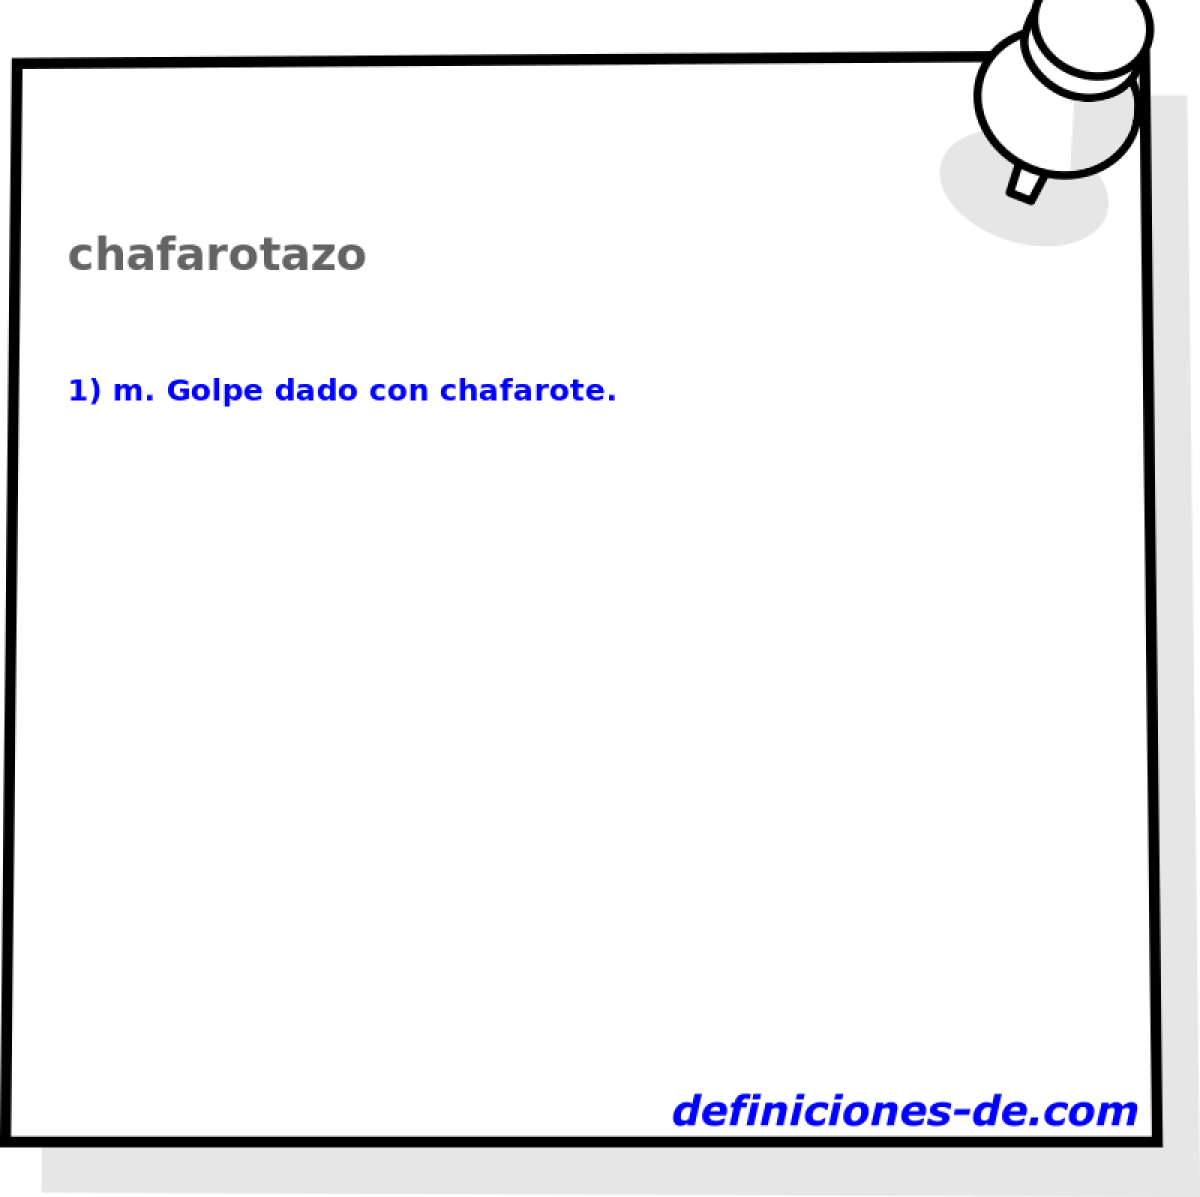 chafarotazo 